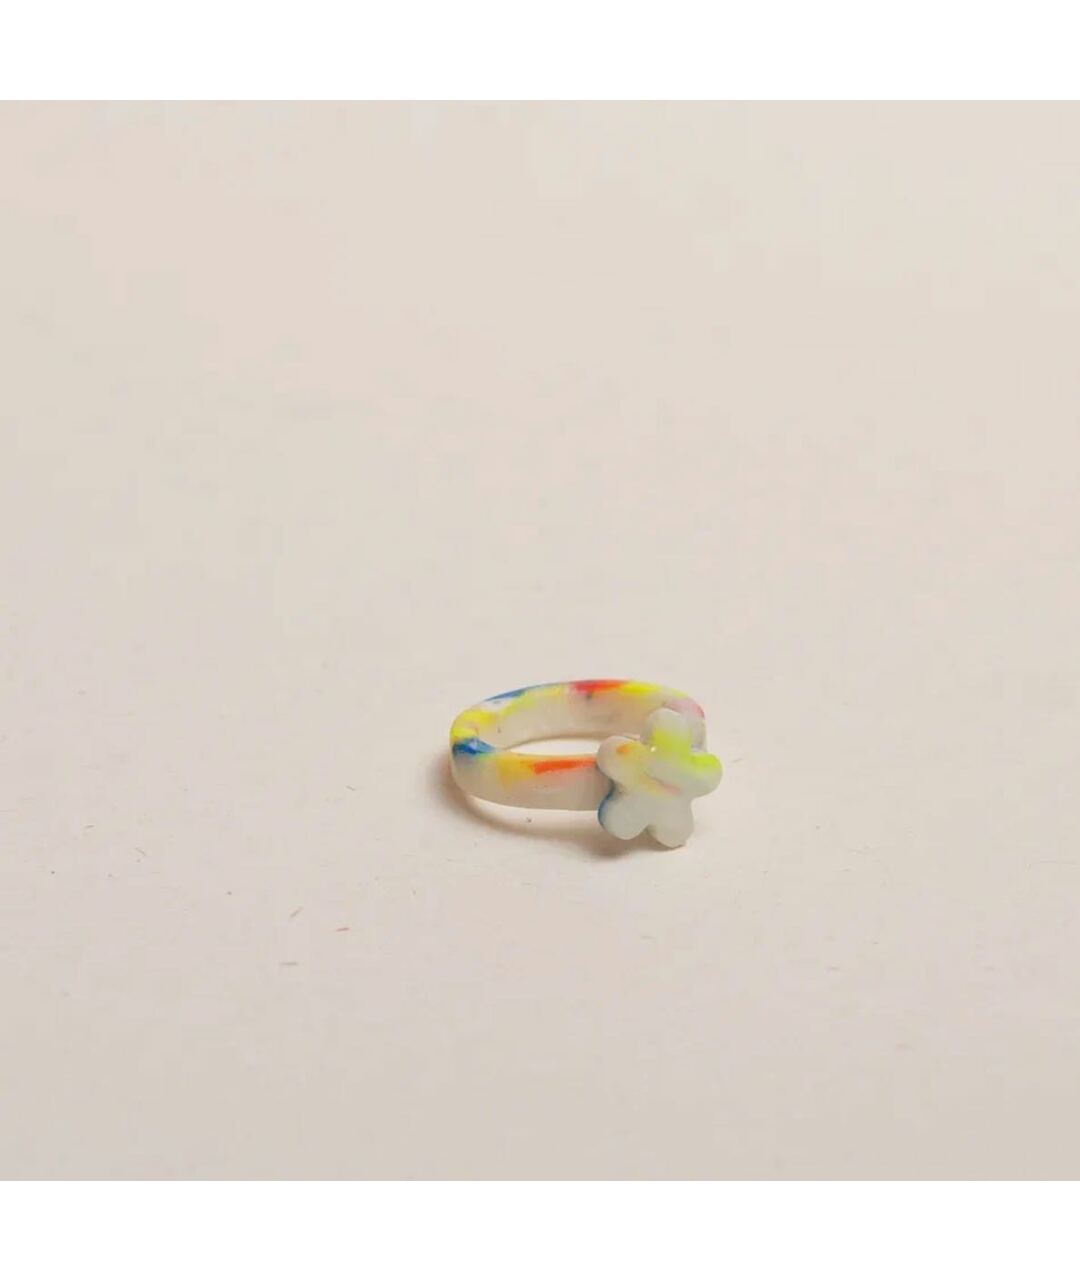 RECYCLE OBJECT Мульти пластиковое кольцо, фото 2